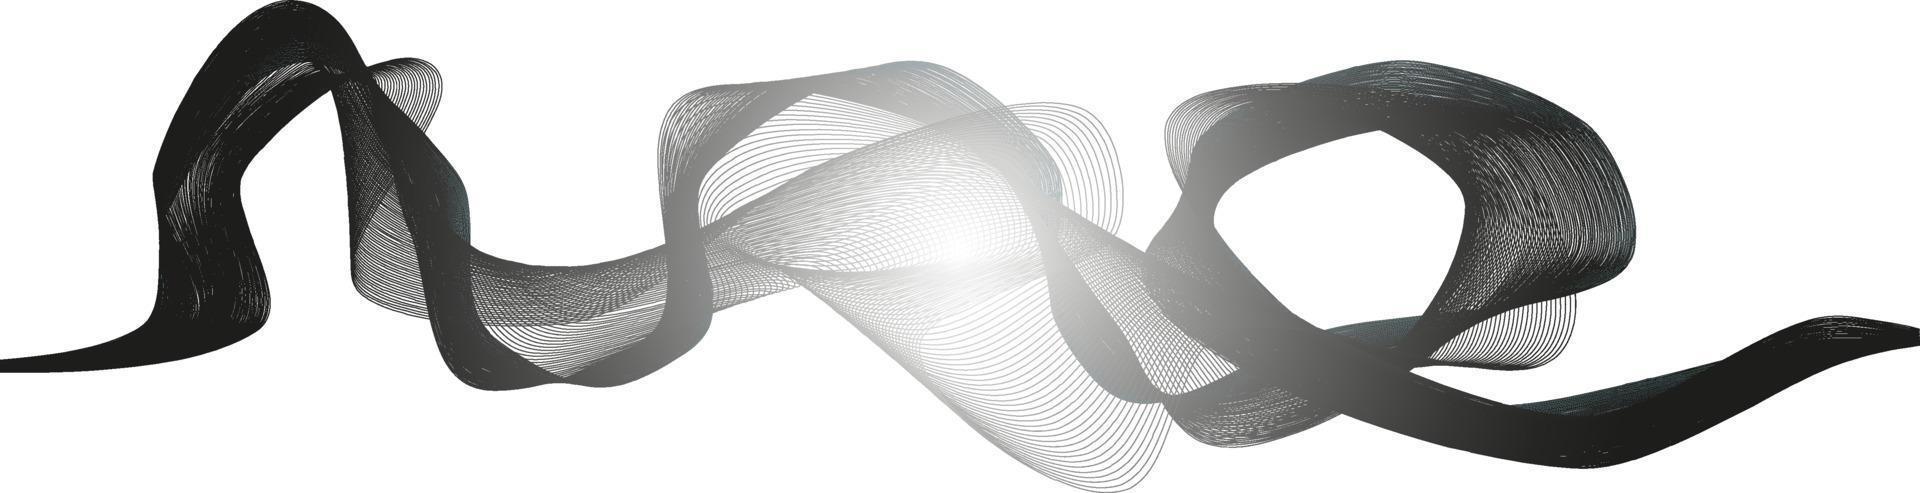 abstraktes wellenelement für design. digitaler Frequenzspur-Equalizer. stilisierte abstrakte Wellenlinien Hintergrund. Vektor-Illustration. gebogene Wellenlinie, glatter Streifen. vektor